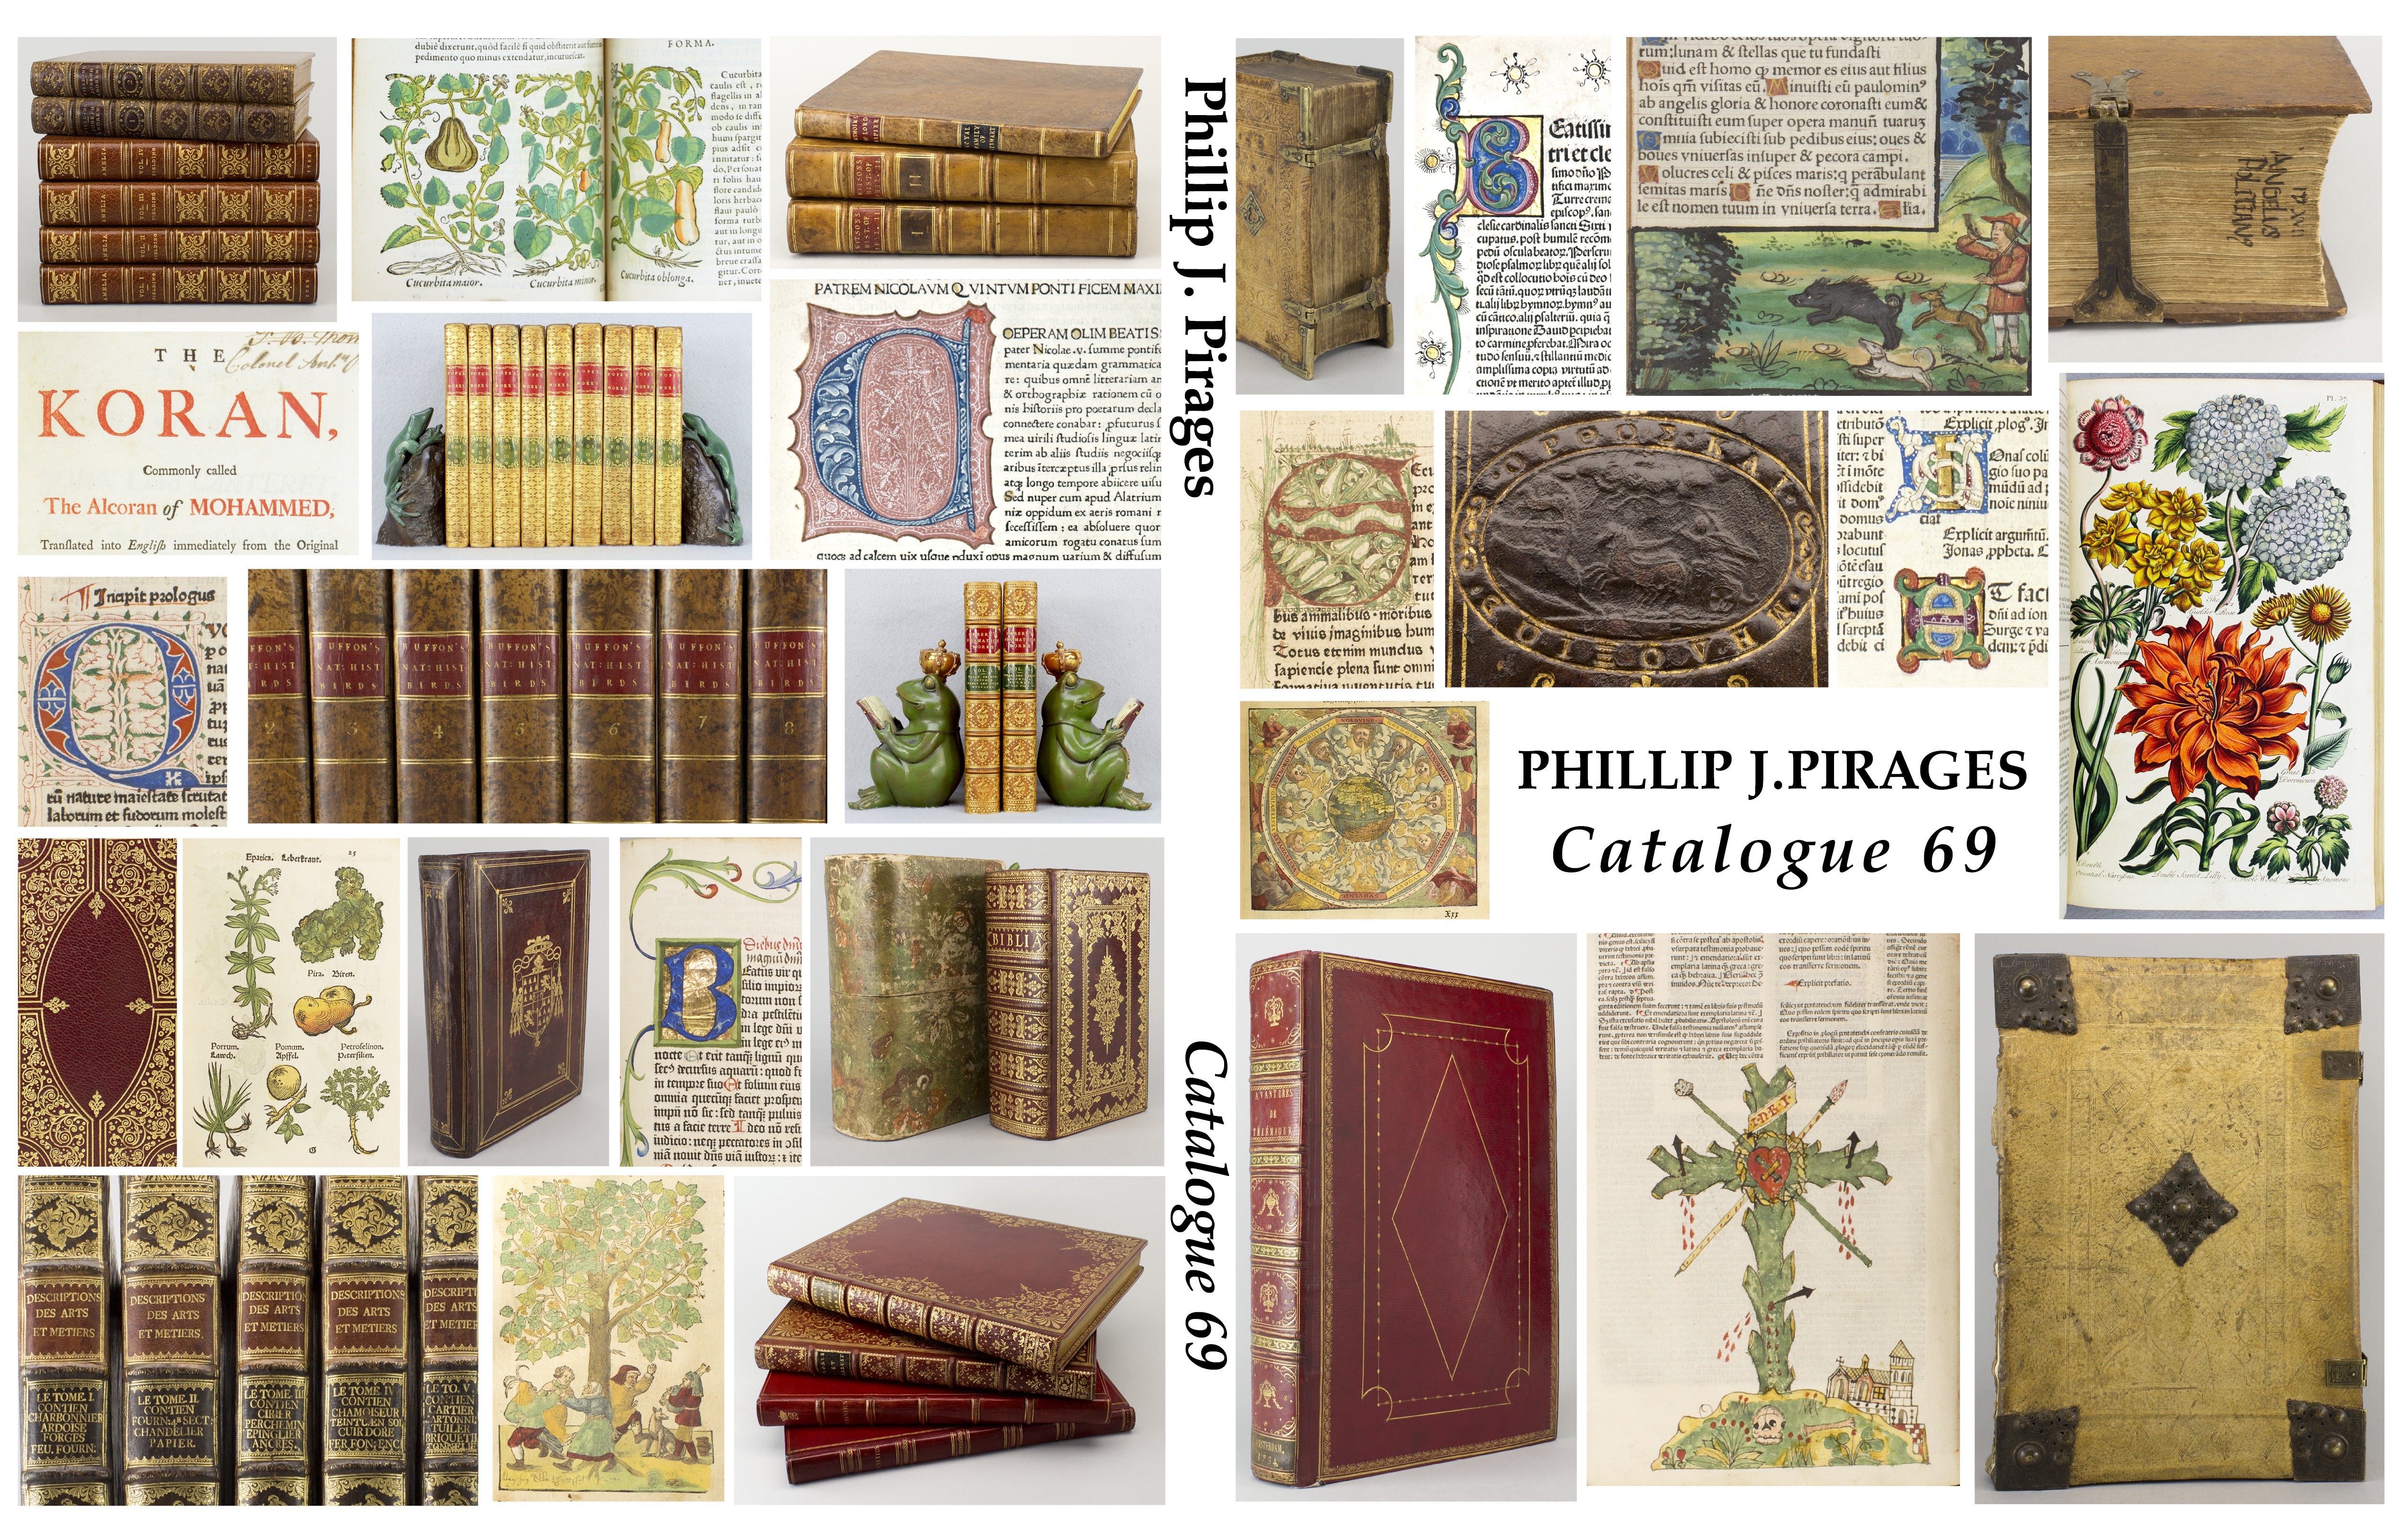 Phillip J. Pirages Catalogue 69